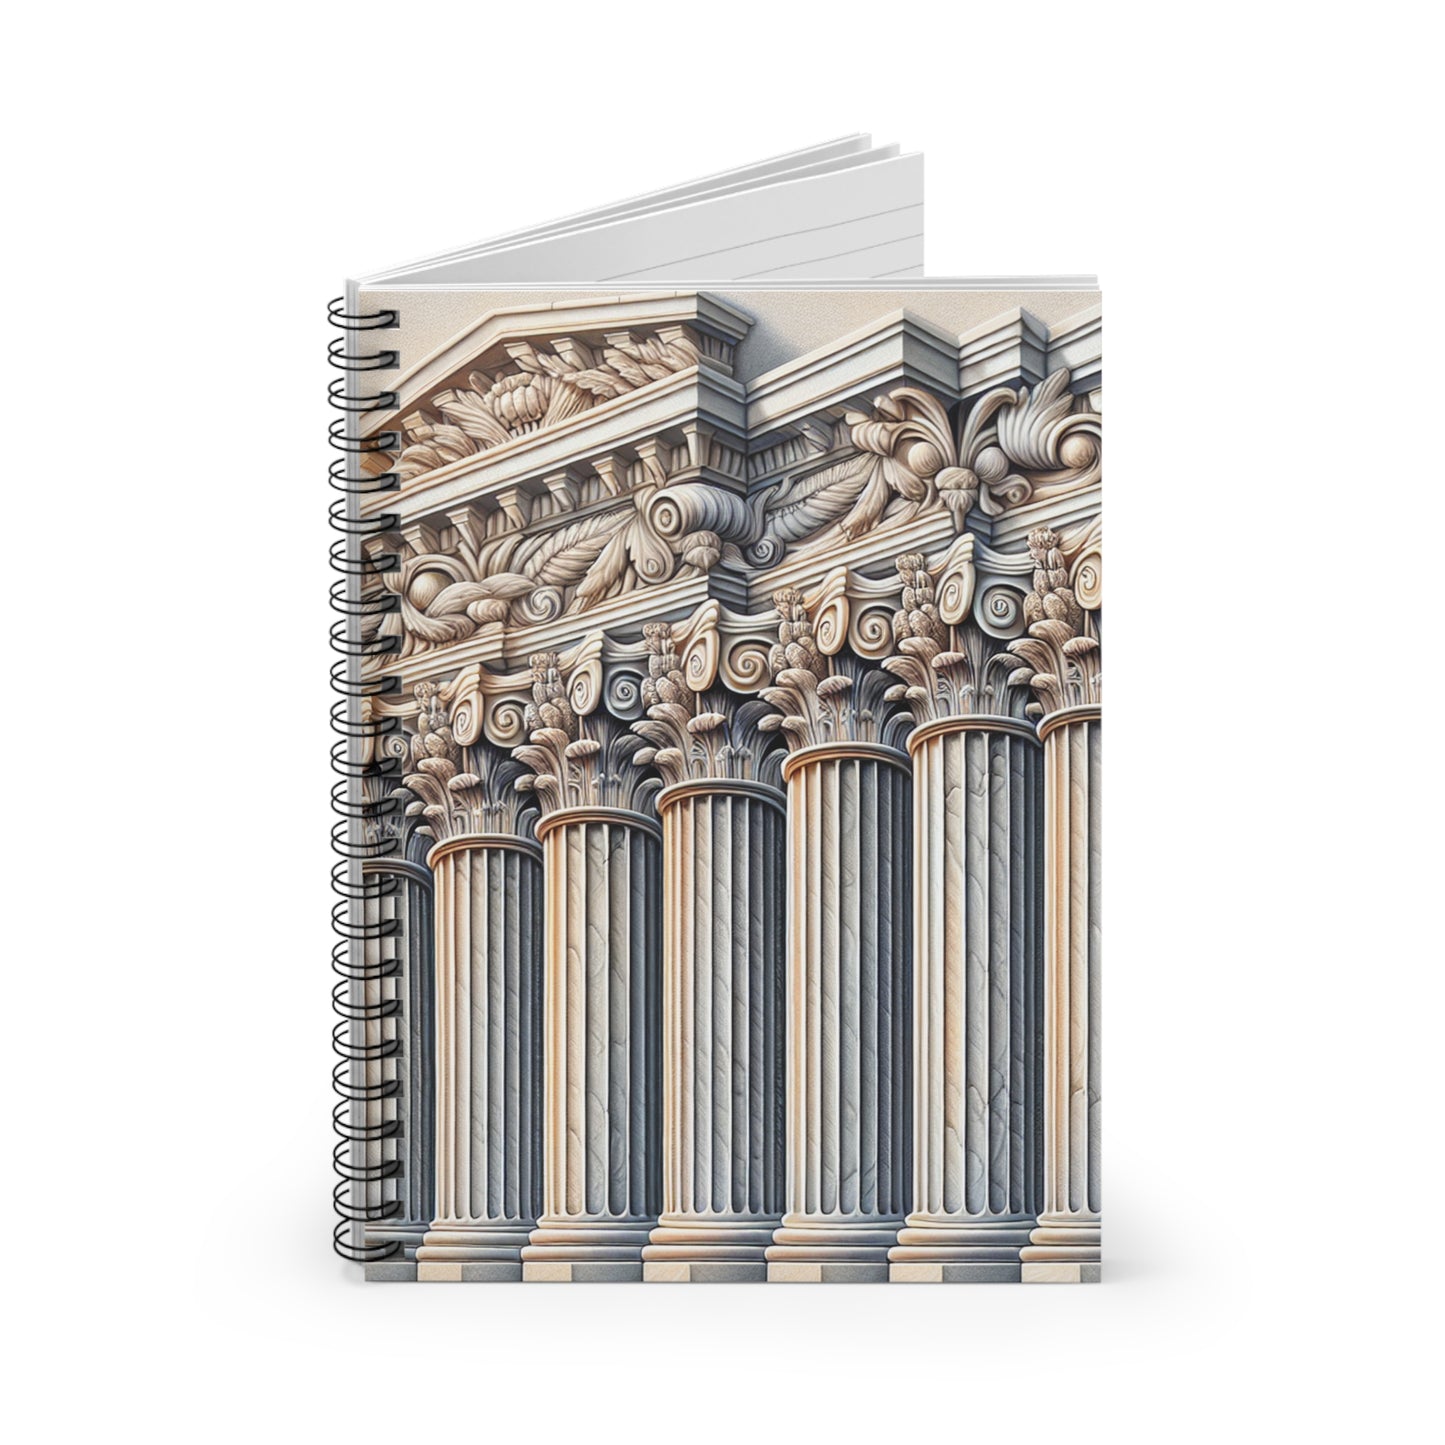 "Colonnes murales 3D : une œuvre d'art architecturale" - The Alien Spiral Notebook (Ligne Lignée) Style Trompe-l'oeil